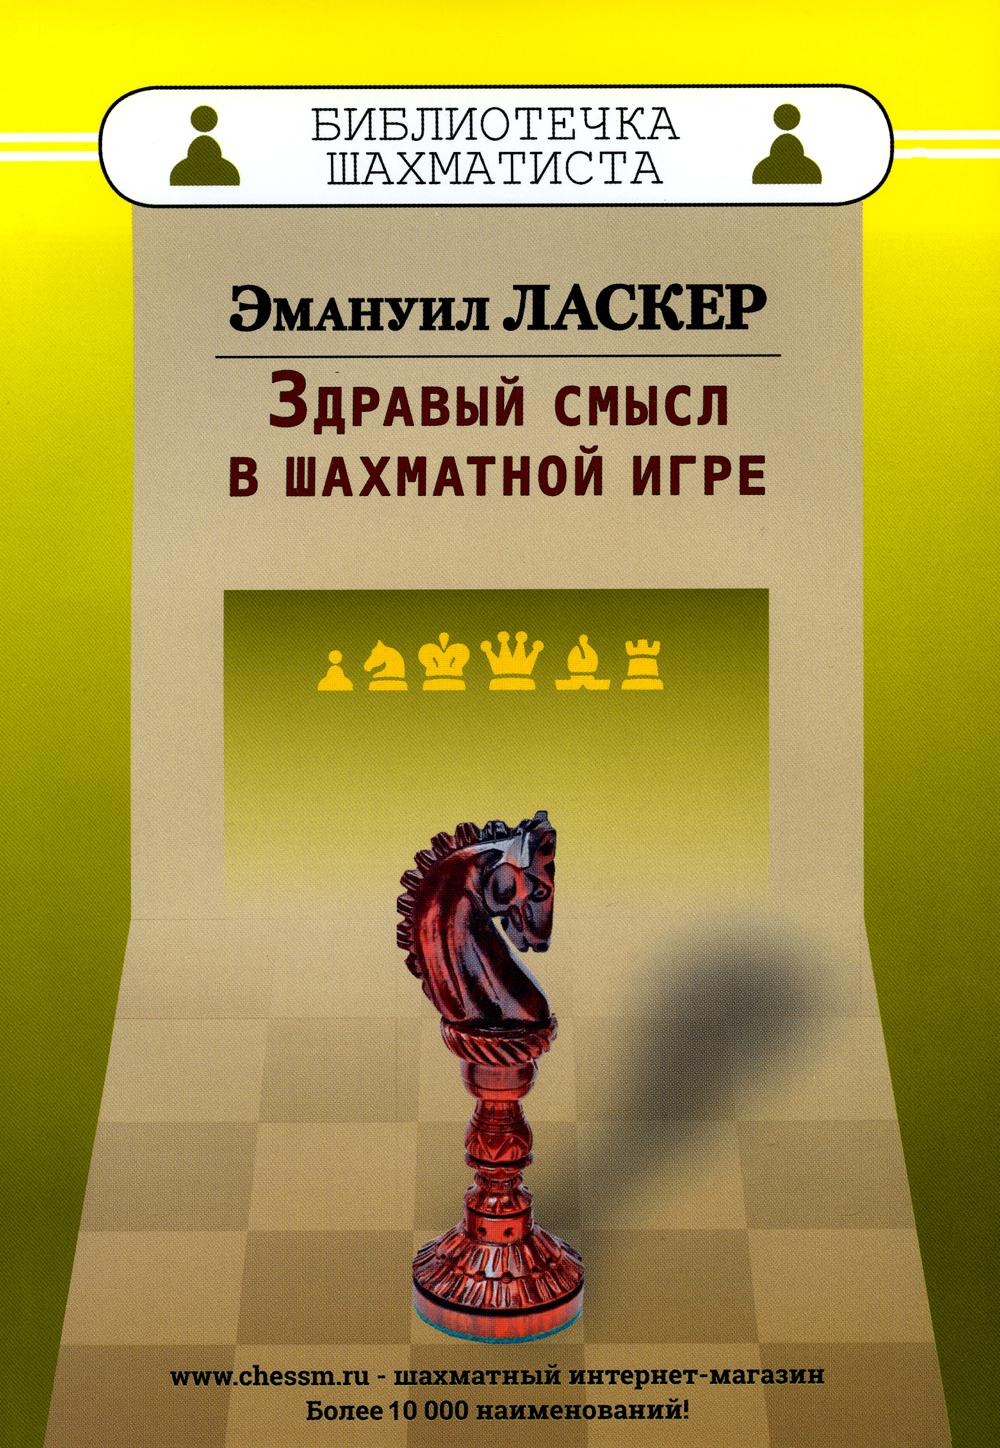 фото Книга здравый смысл в шахматной игре russian chess house